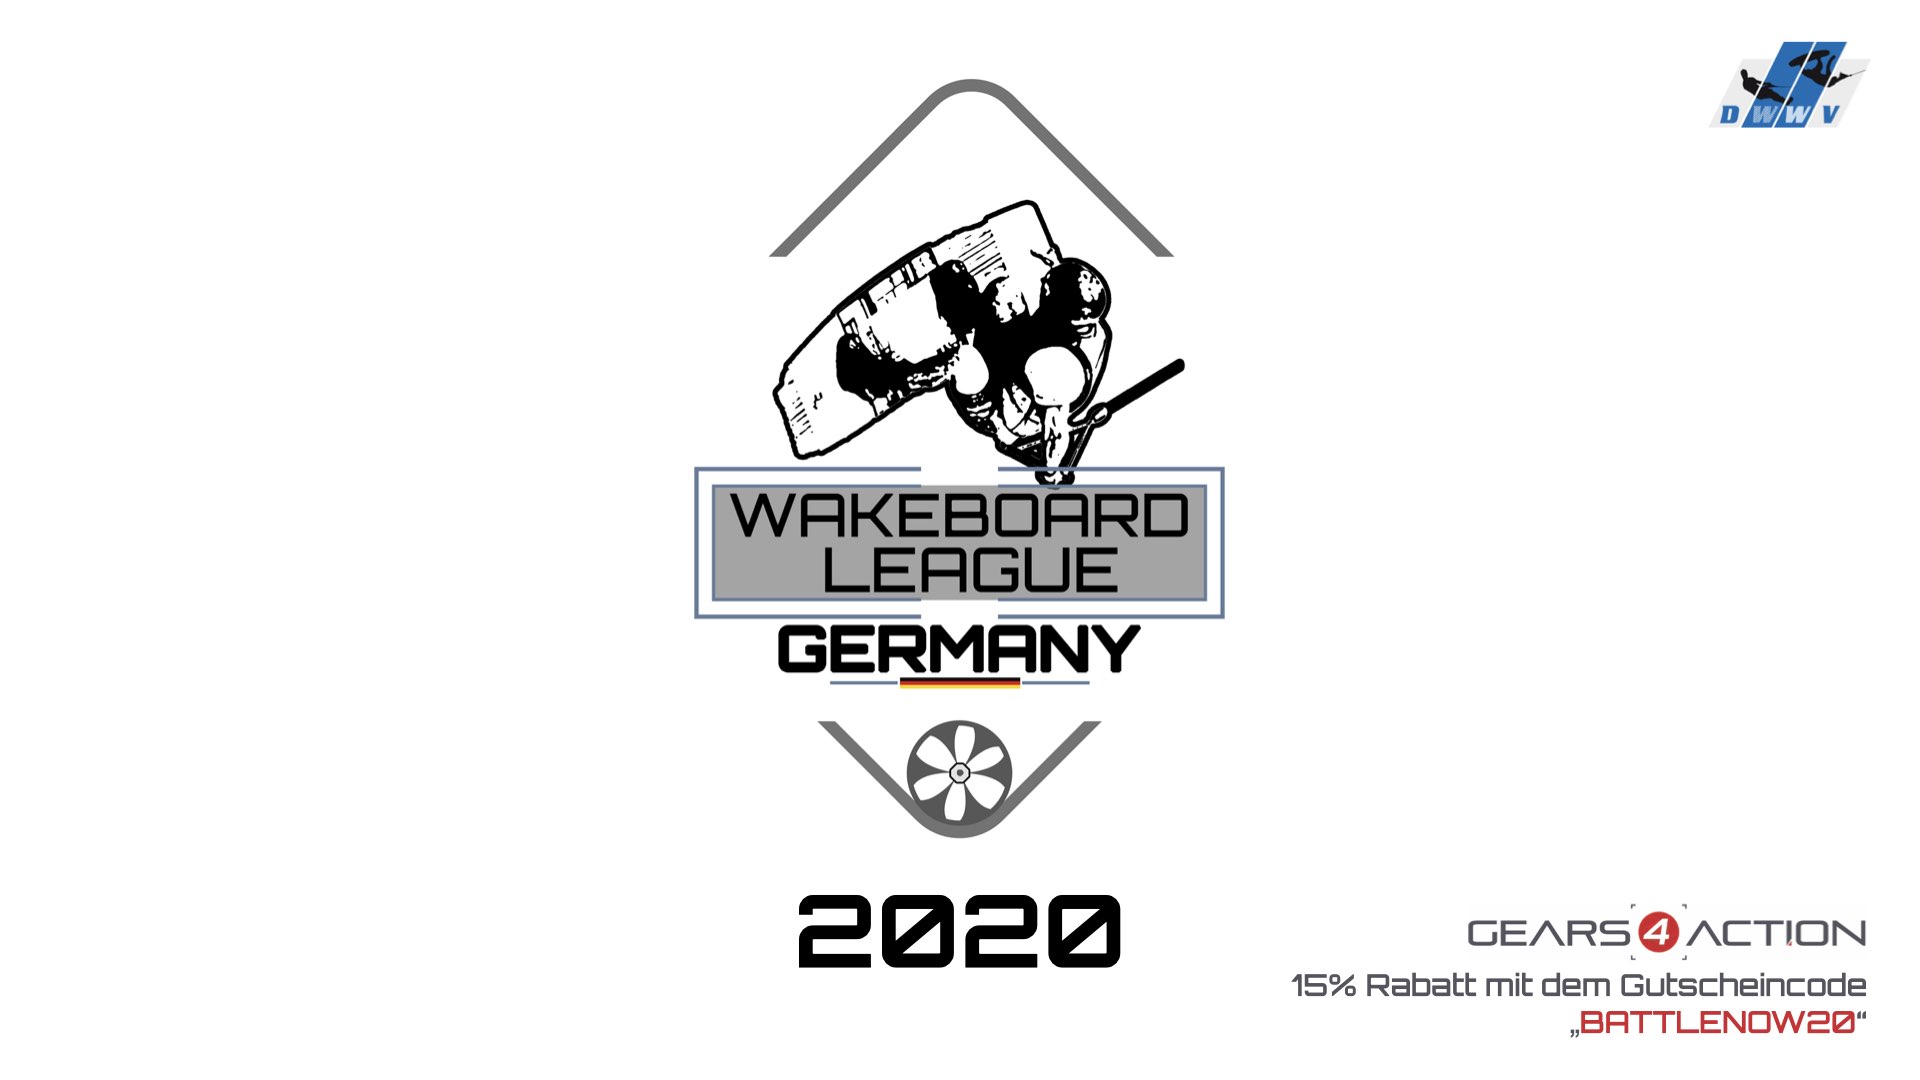 DWWV Wakeboard League Germany - Battle 3 - Best Backroll